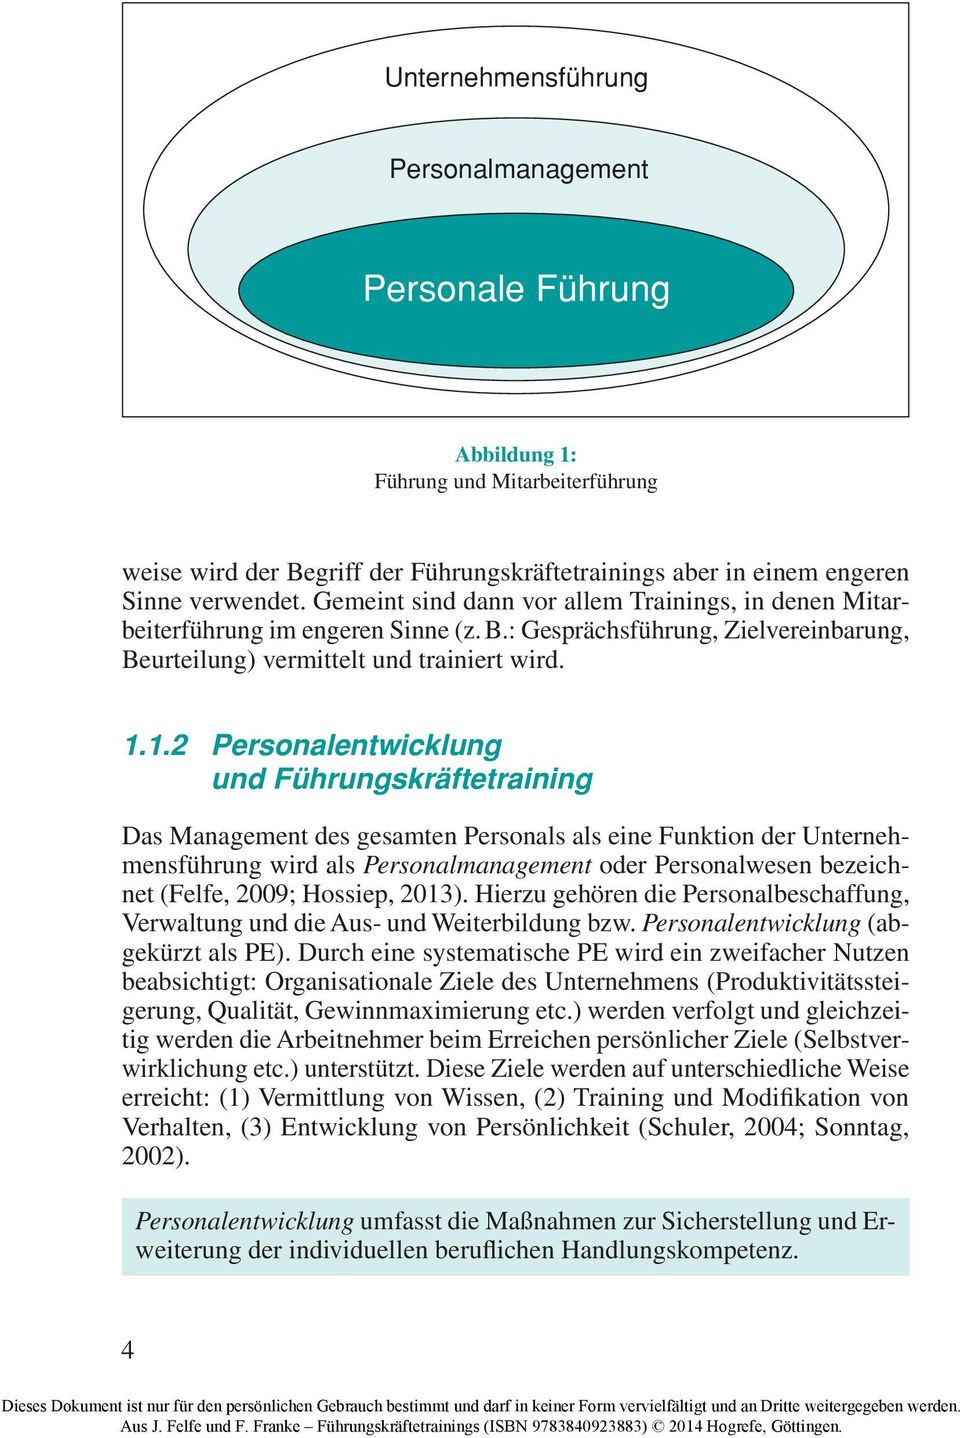 Führungskräfte training Das Management des gesamten Personals als eine Funktion der Unternehmensführung wird als Personalmanagement oder Personalwesen bezeichnet (Felfe, 2009; Hossiep, 2013) Hierzu